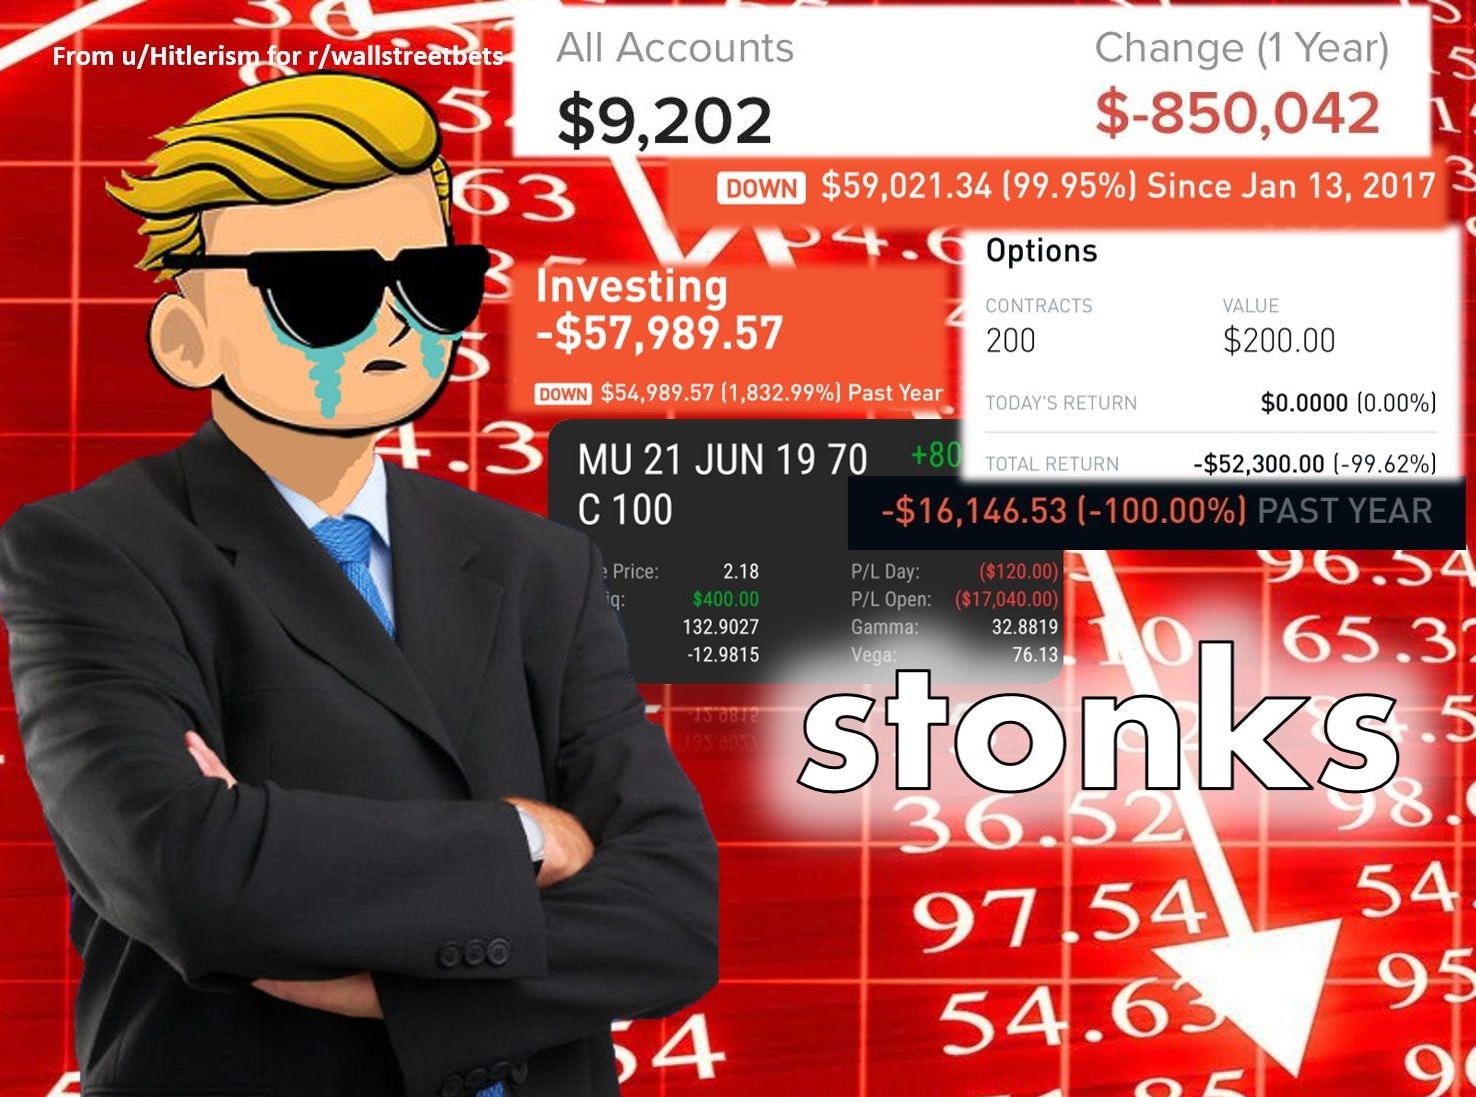 Τα "αμούστακα" του Reddit ξαναχτυπούν: 20χρονος έβγαλε $110 εκατ.!